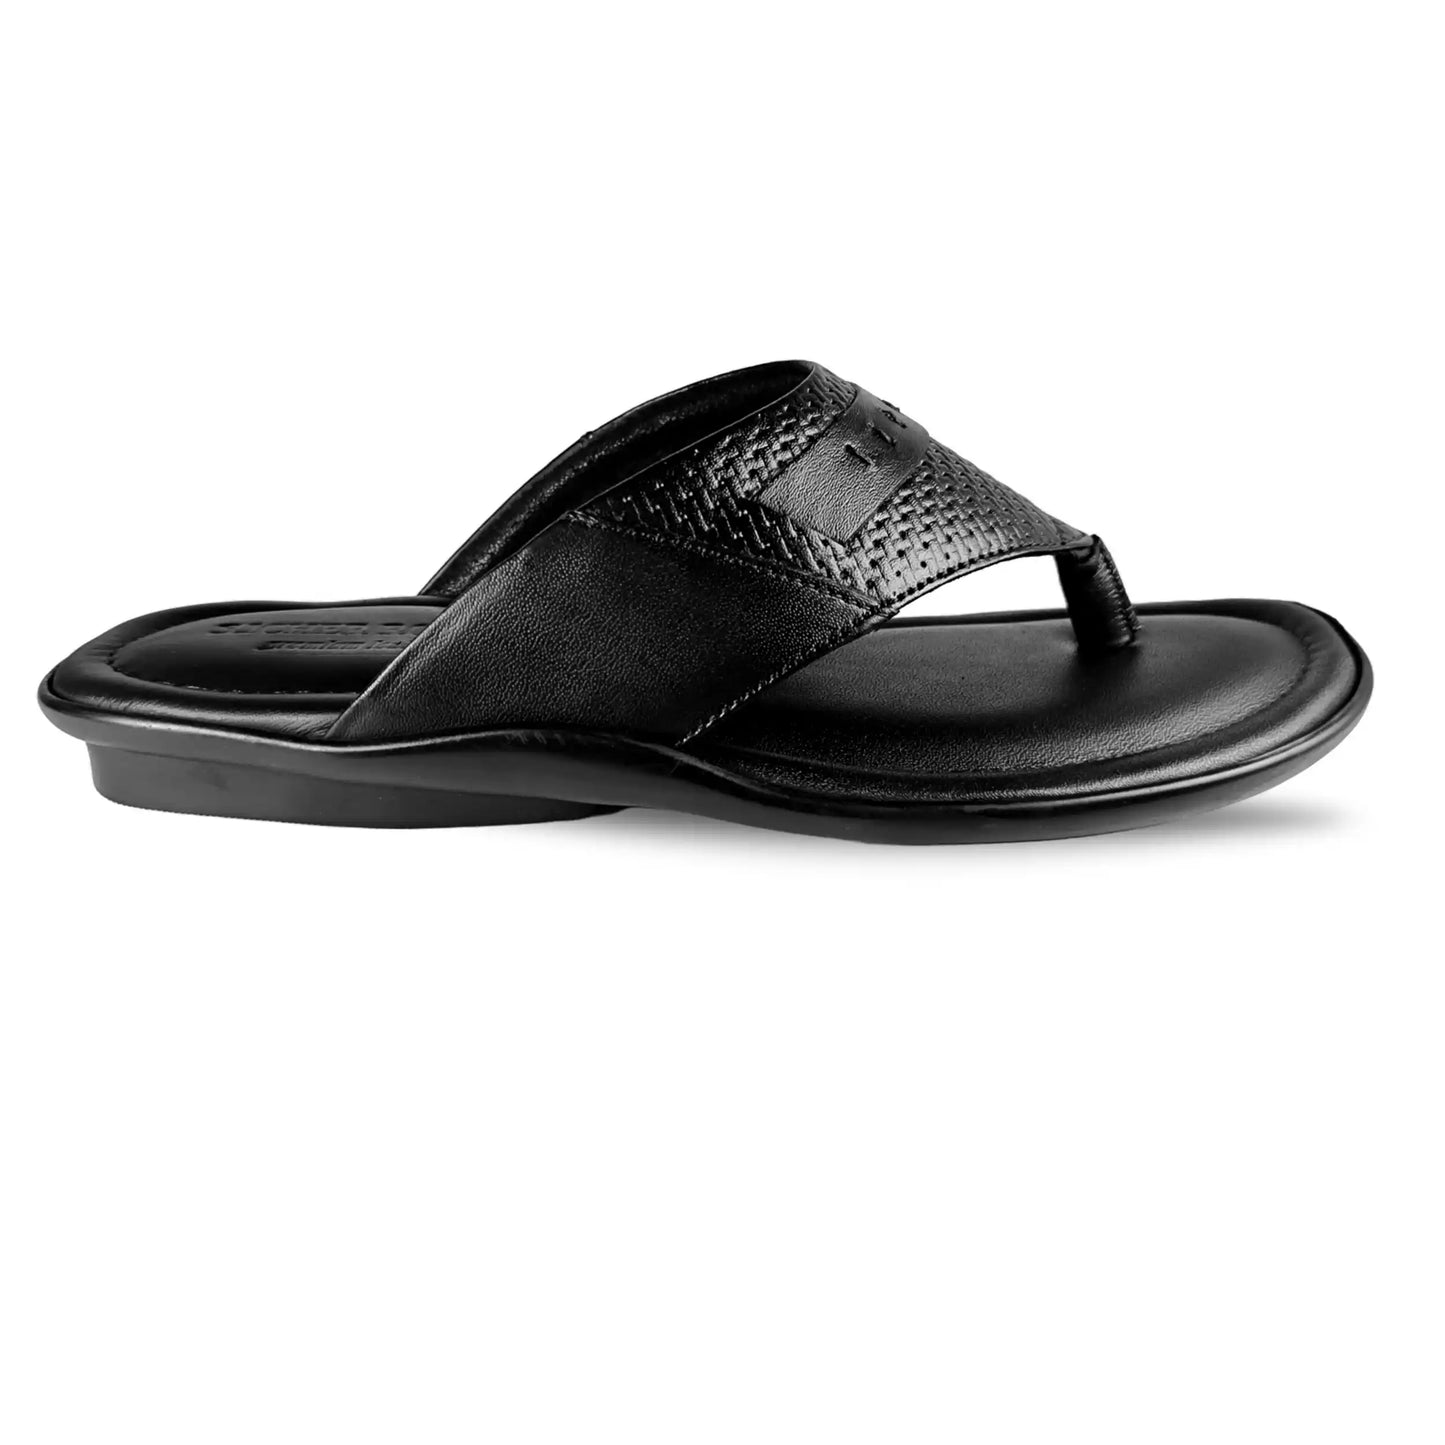 Genuine Leather Slipper for Men Black Sandal